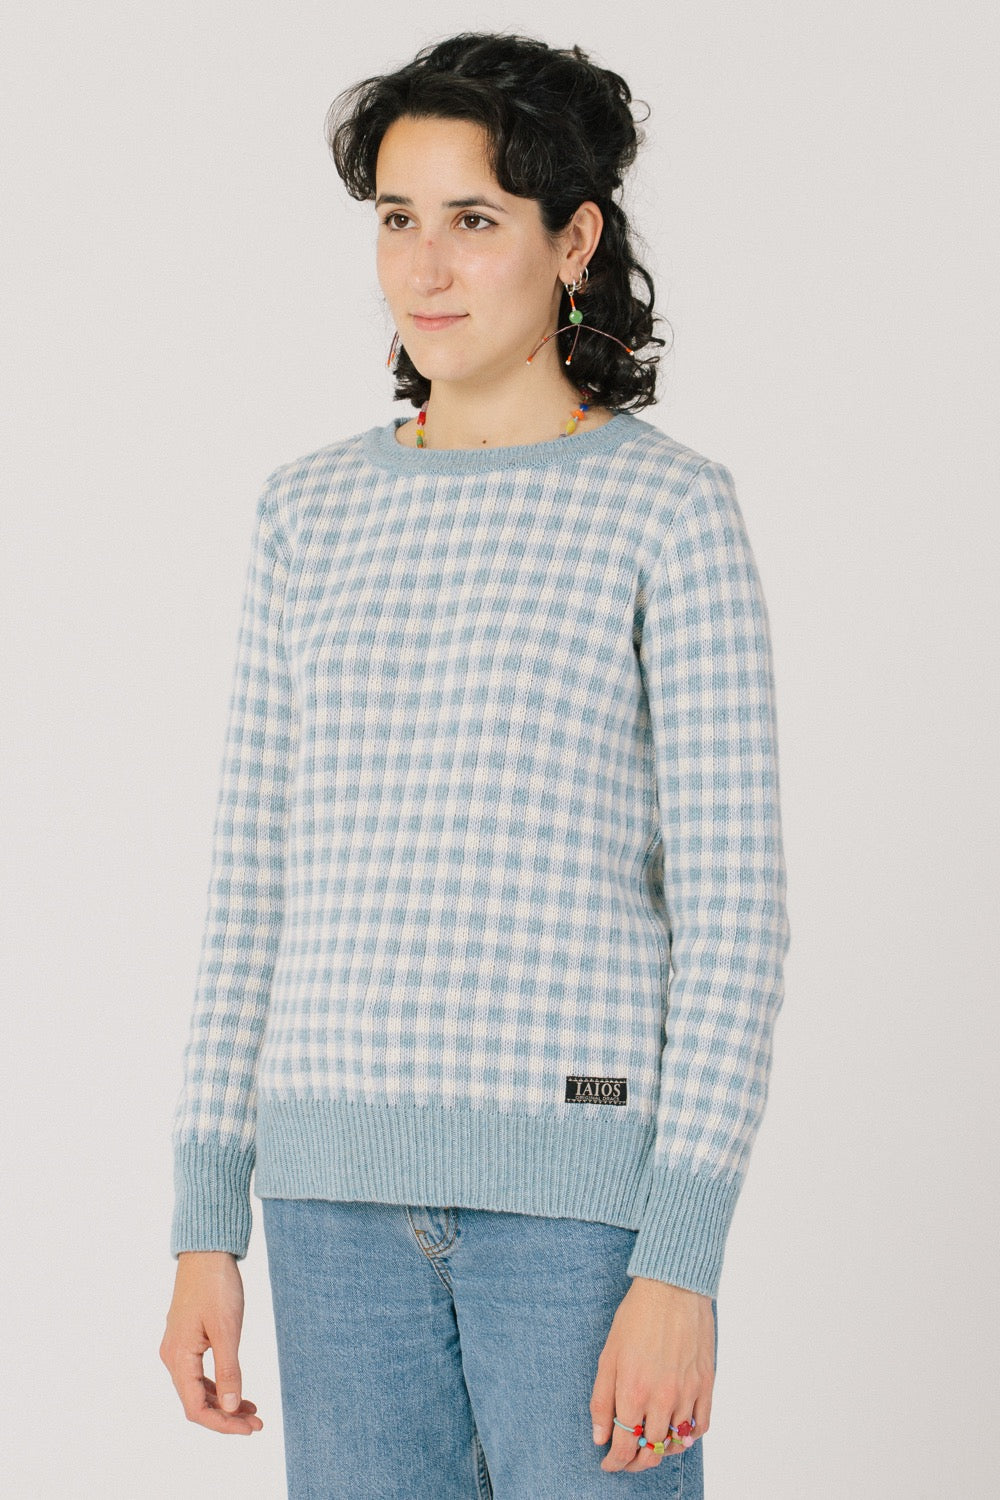 La model amb el jesrey. La forma del jersei és el patró bàsic i porta dos talls als llesos dels baixos.